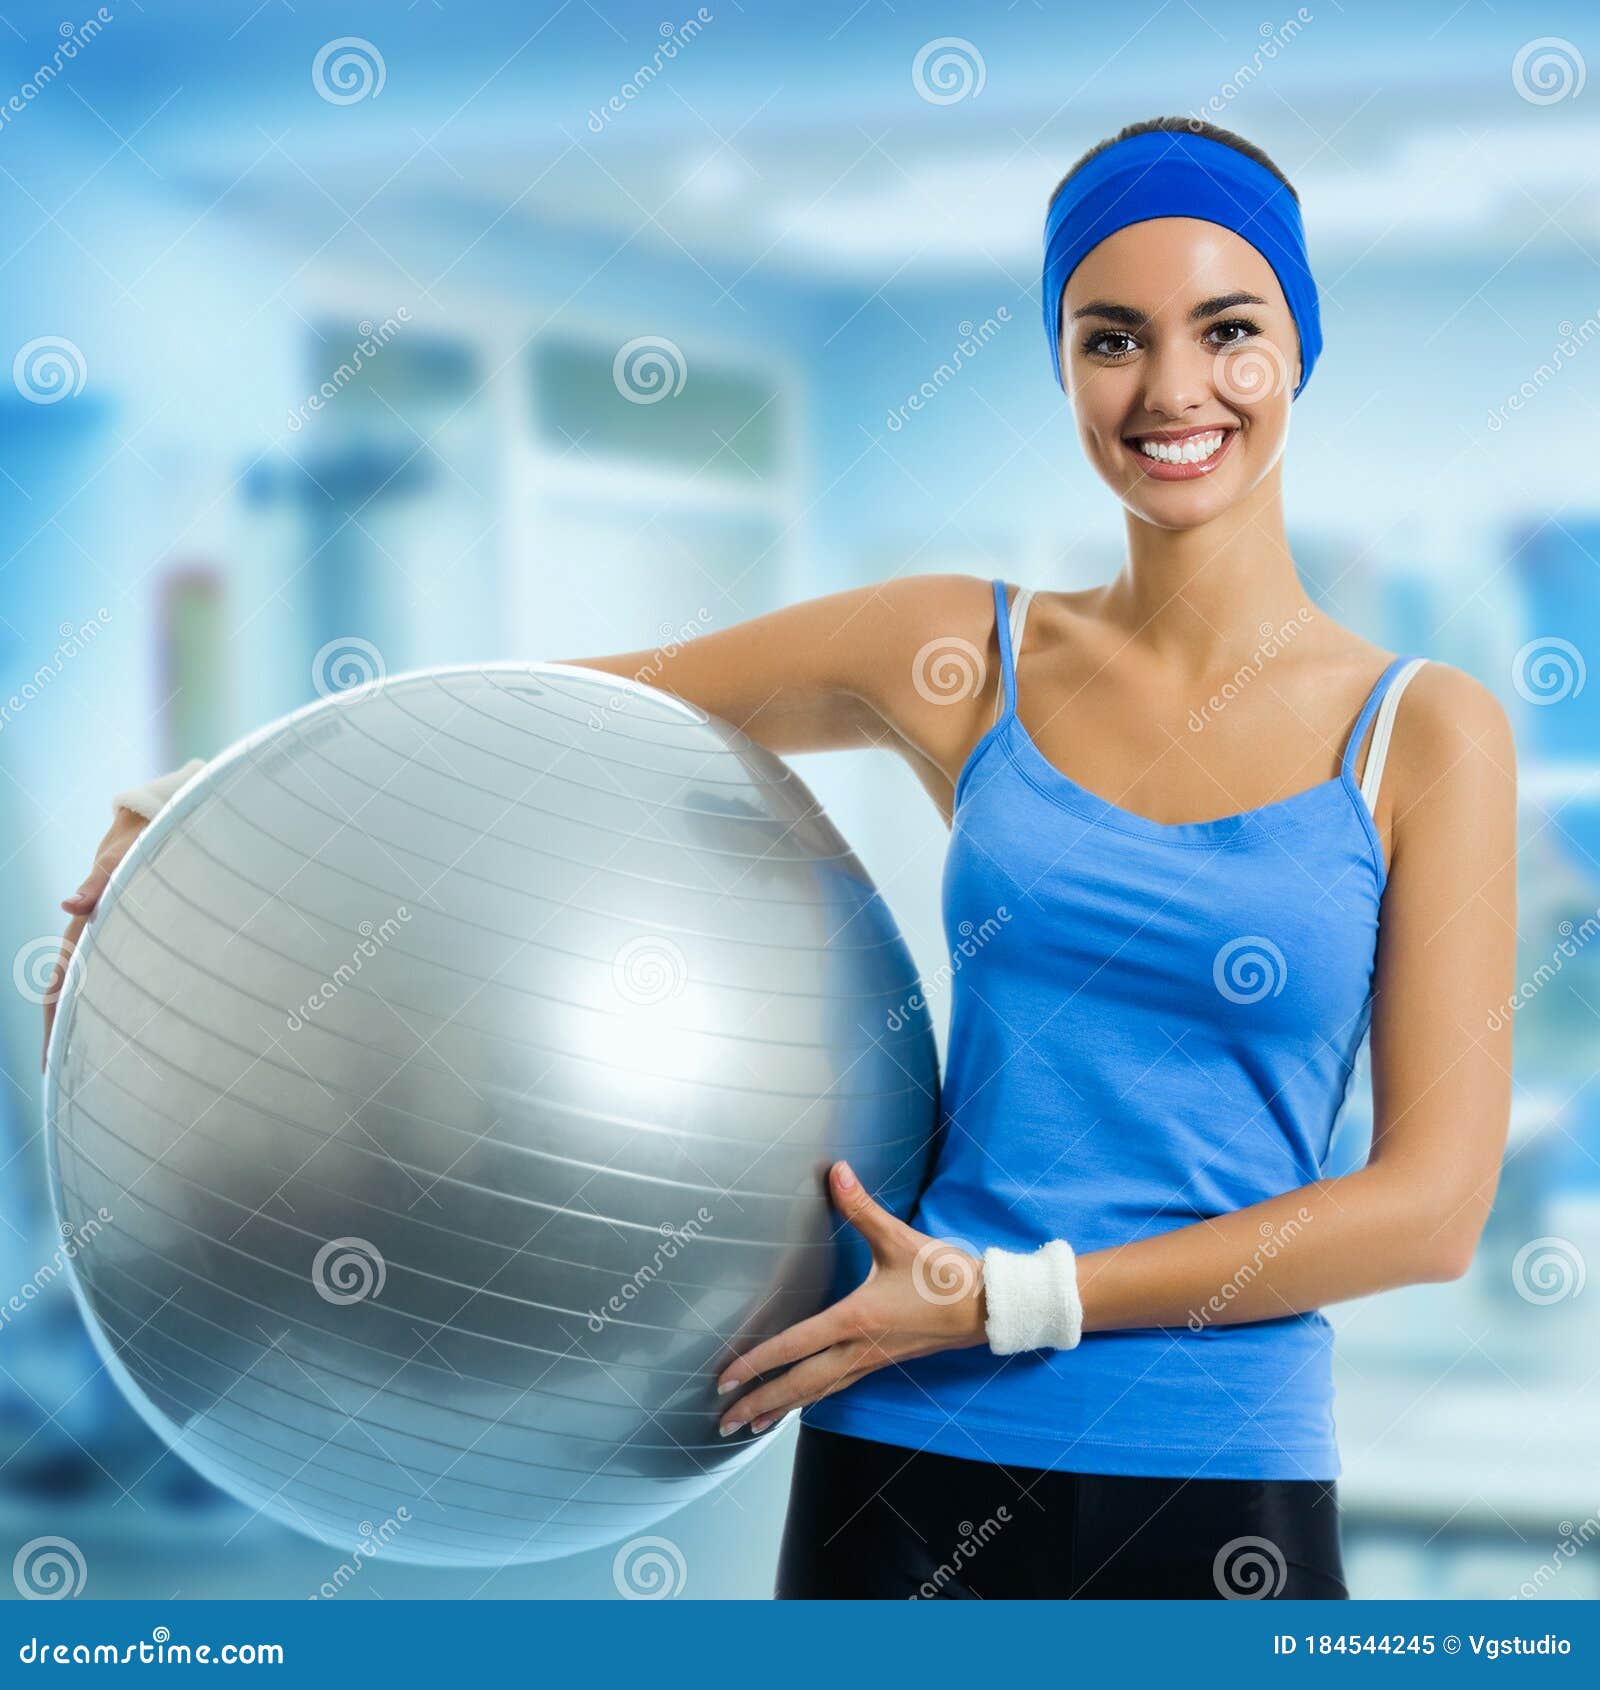 SPIRIT TCR - 瑜珈健身球 55cm - 藍 - 薪動健康科技有限公司